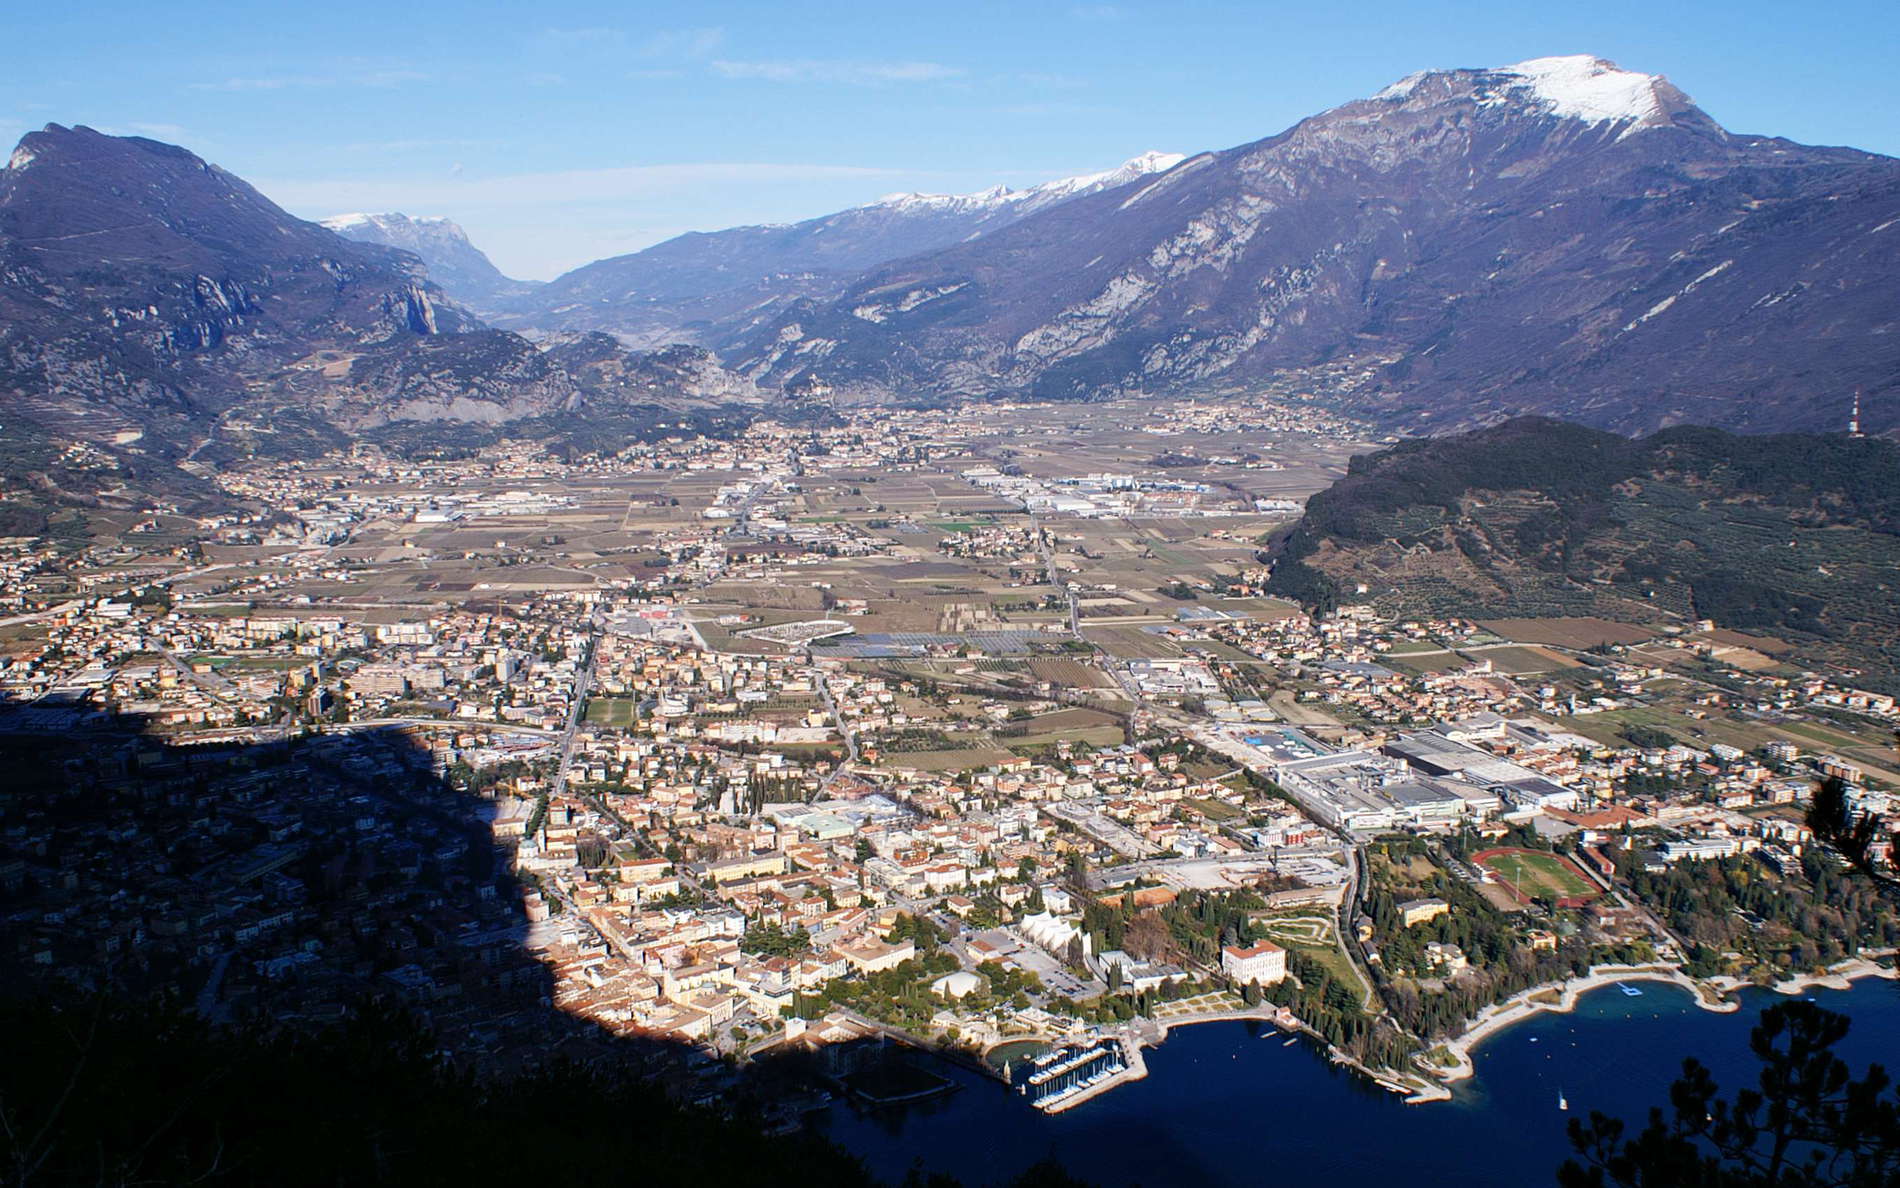 Riva del Garda and Sarca Valley